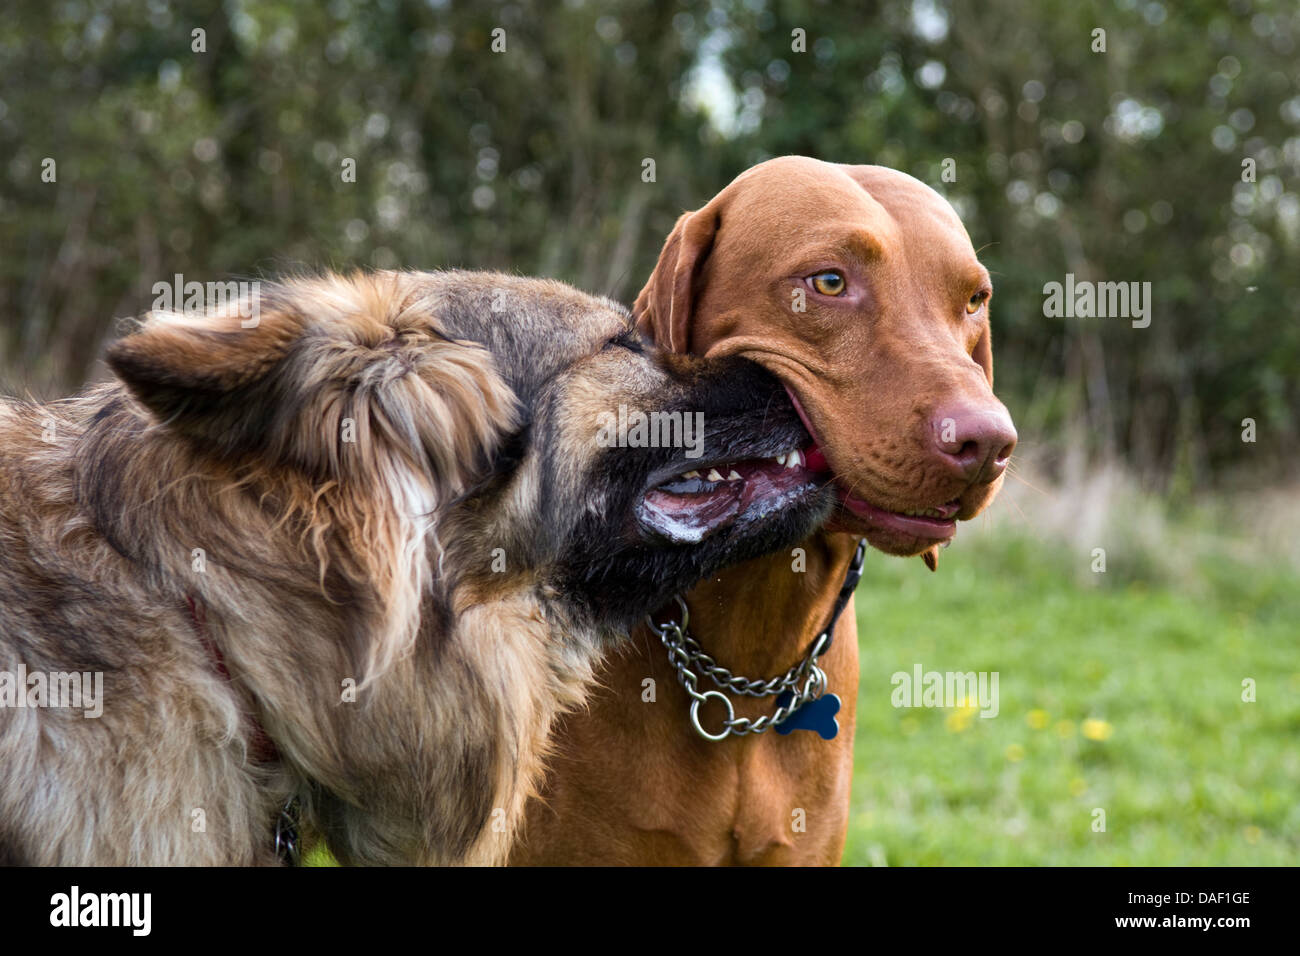 Lustige Hund Bild mit Nase steckte in einem anderen Hunde Mund Spielzeug wegnehmen wollen. Deutscher Schäferhund und ein Magyar Vizsla. Stockfoto